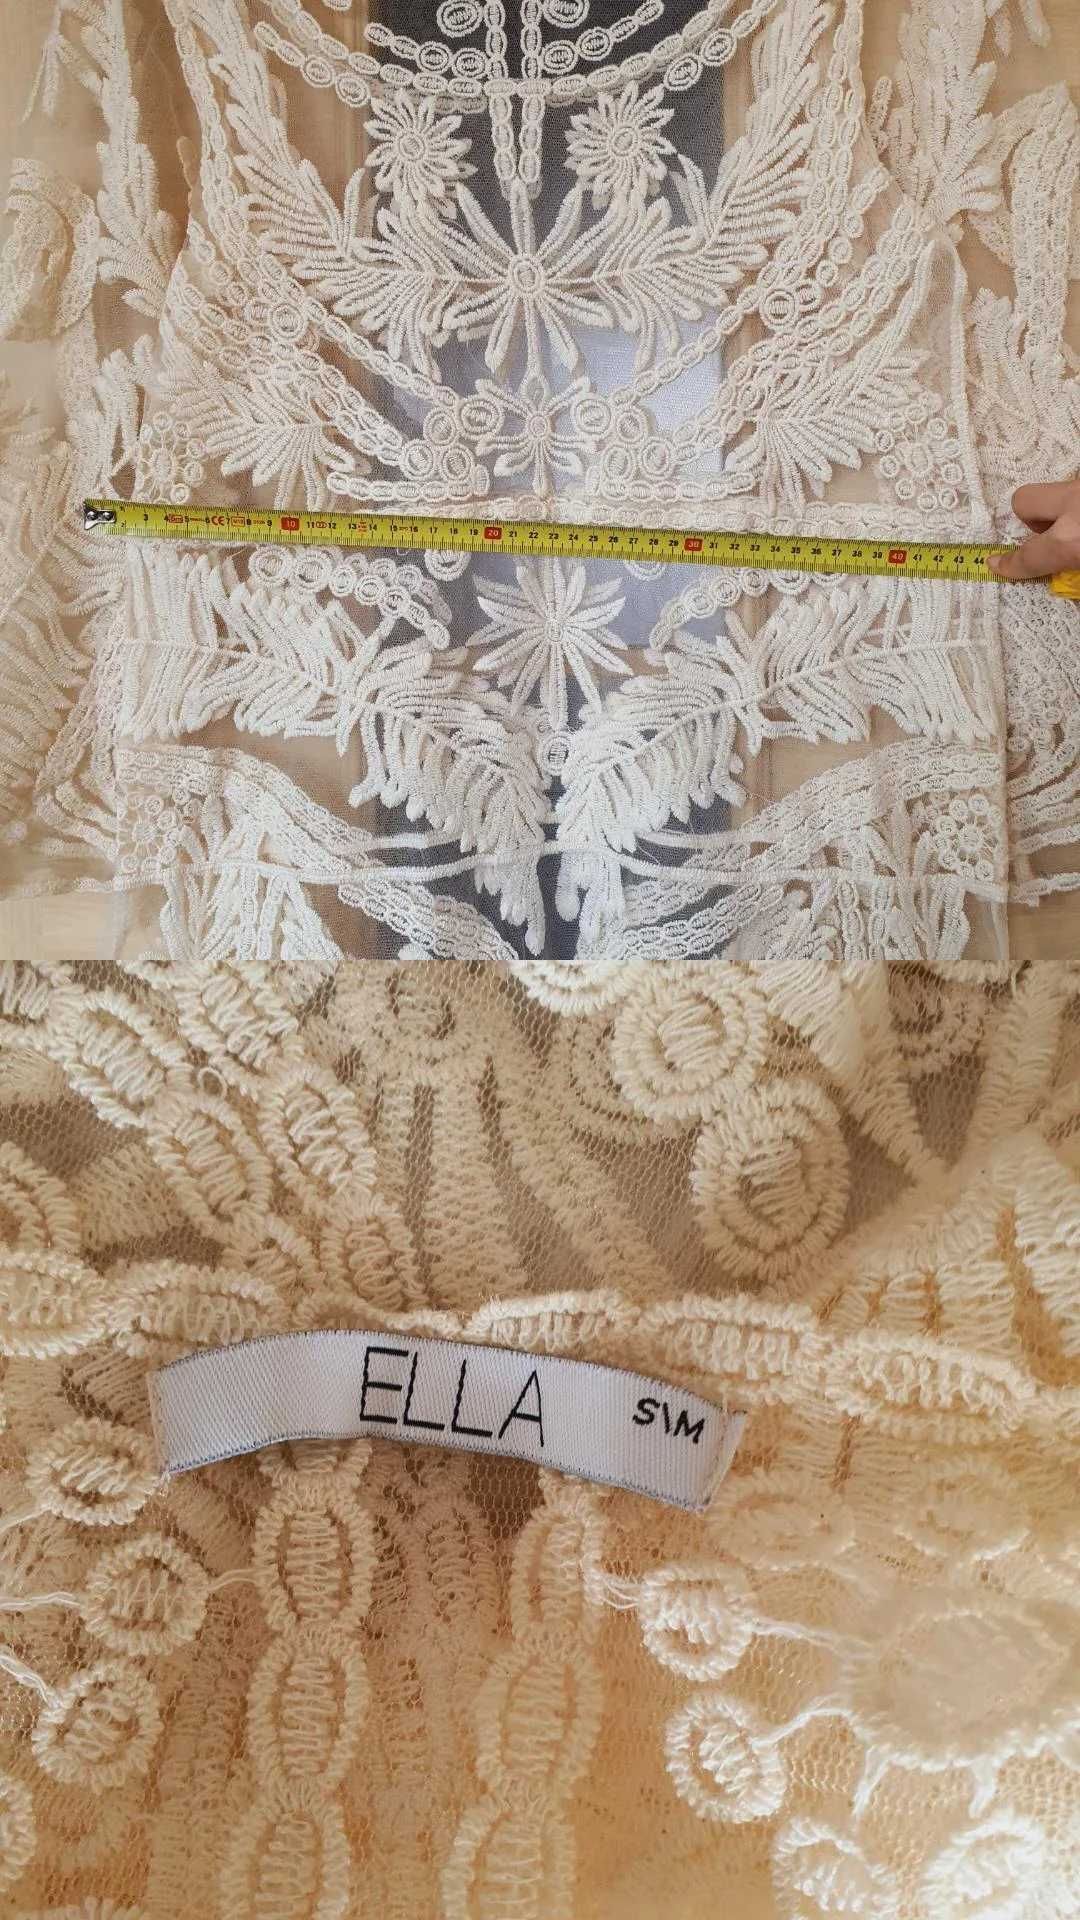 ELLA – Letni długi tunika plażowa na szydełku, S-M